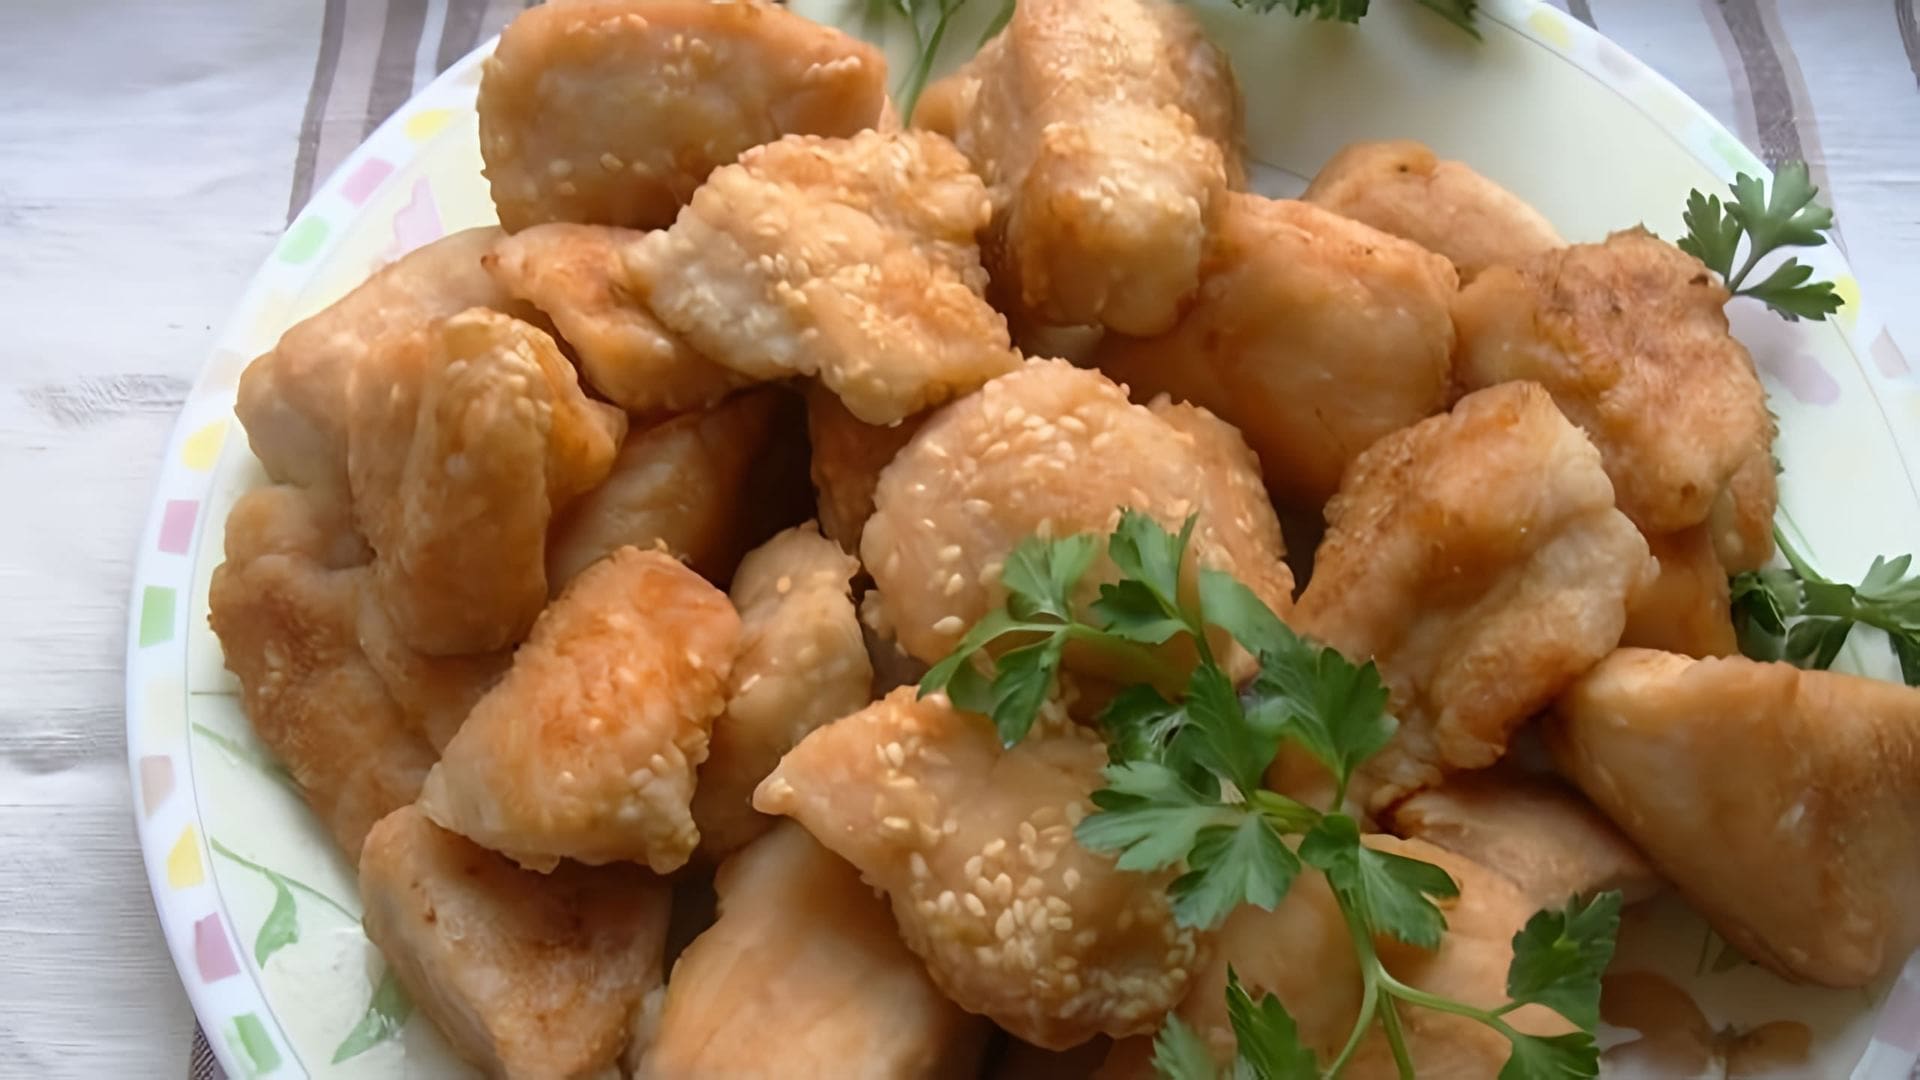 В этом видео демонстрируется рецепт приготовления сочного и нежного жареного мяса - карбонатов с курицей